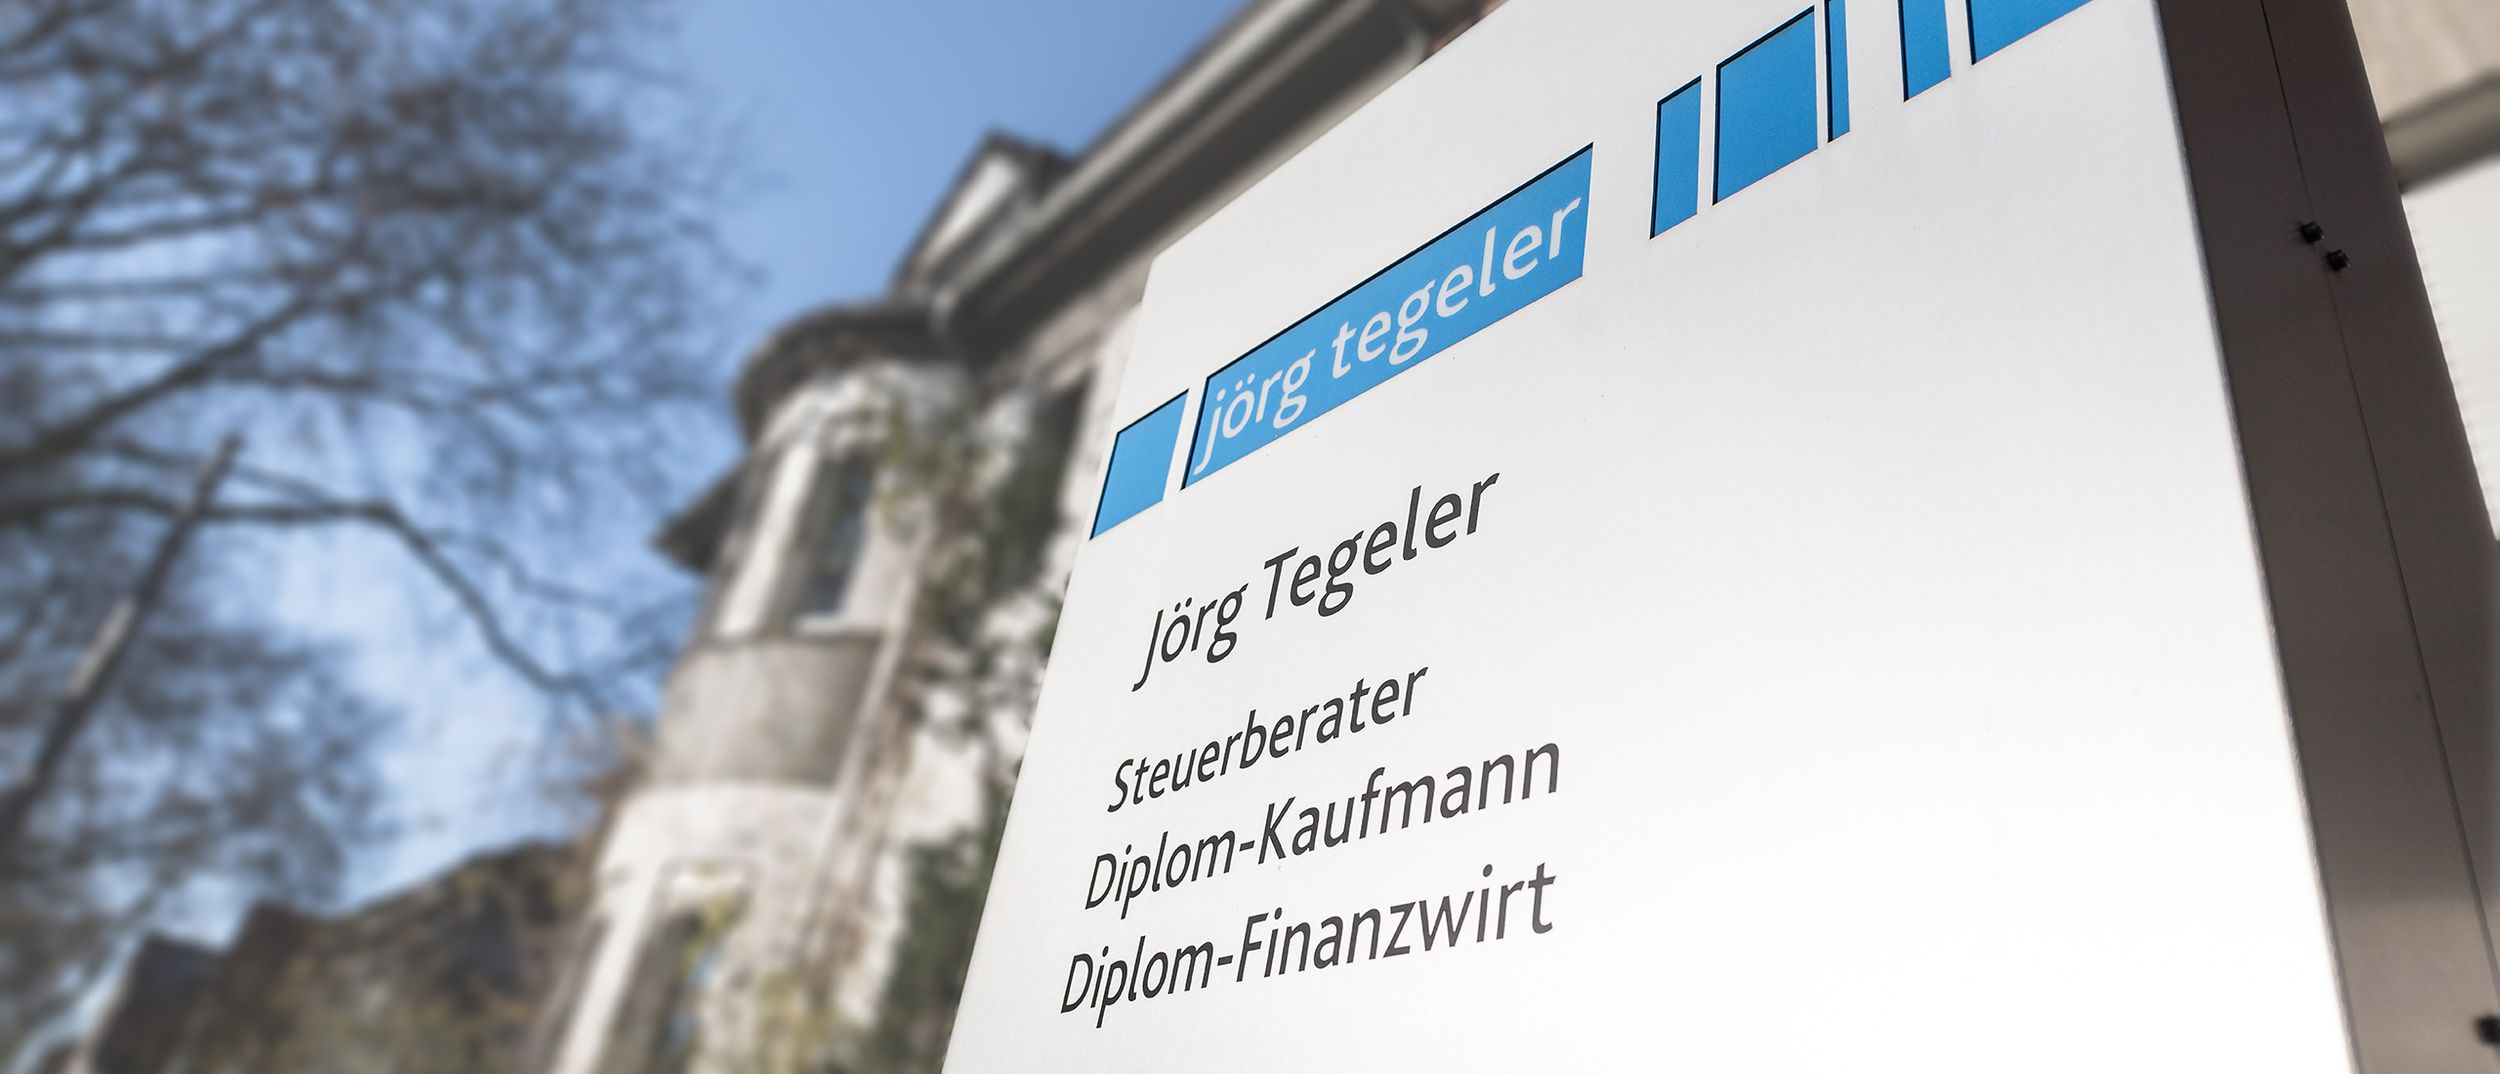 Fotos - Dipl.-Kfm. / Dipl.-Finanzwirt Jörg Tegeler Steuerberater - 7